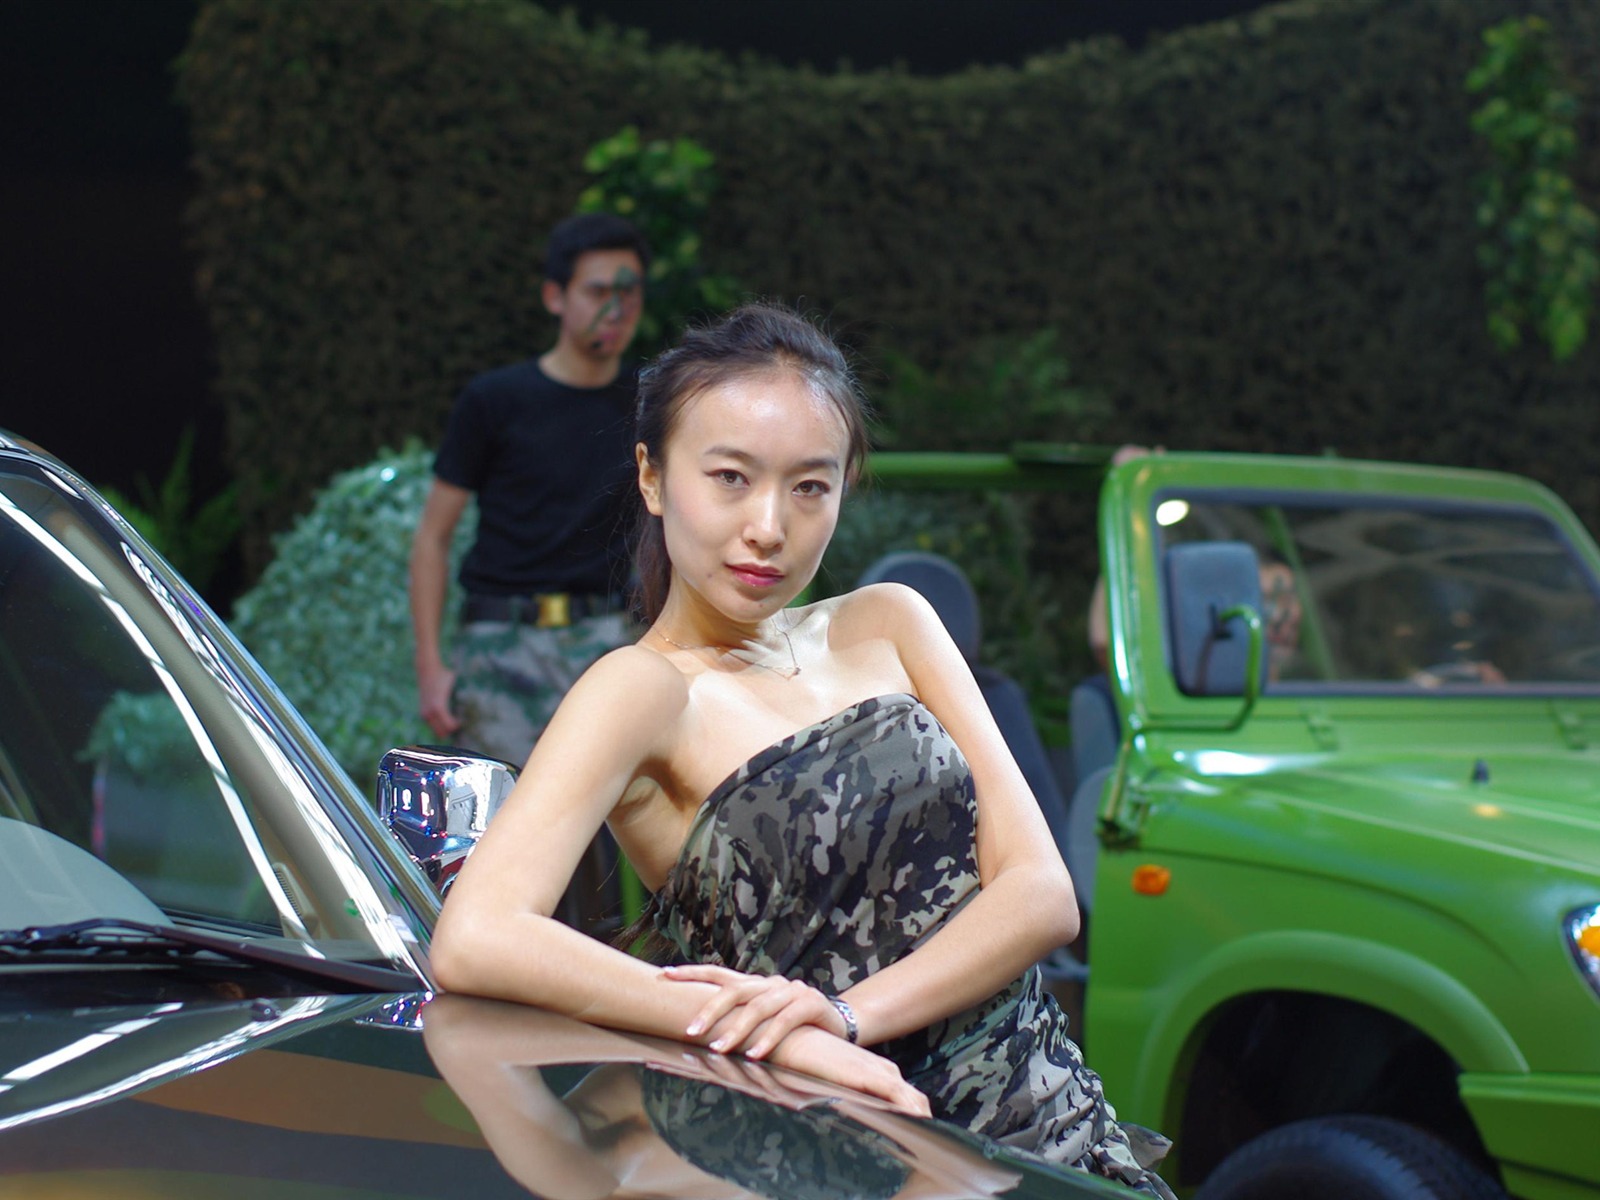 Beijing 2010 Salon de l'auto de beauté (michael68 œuvres) #14 - 1600x1200